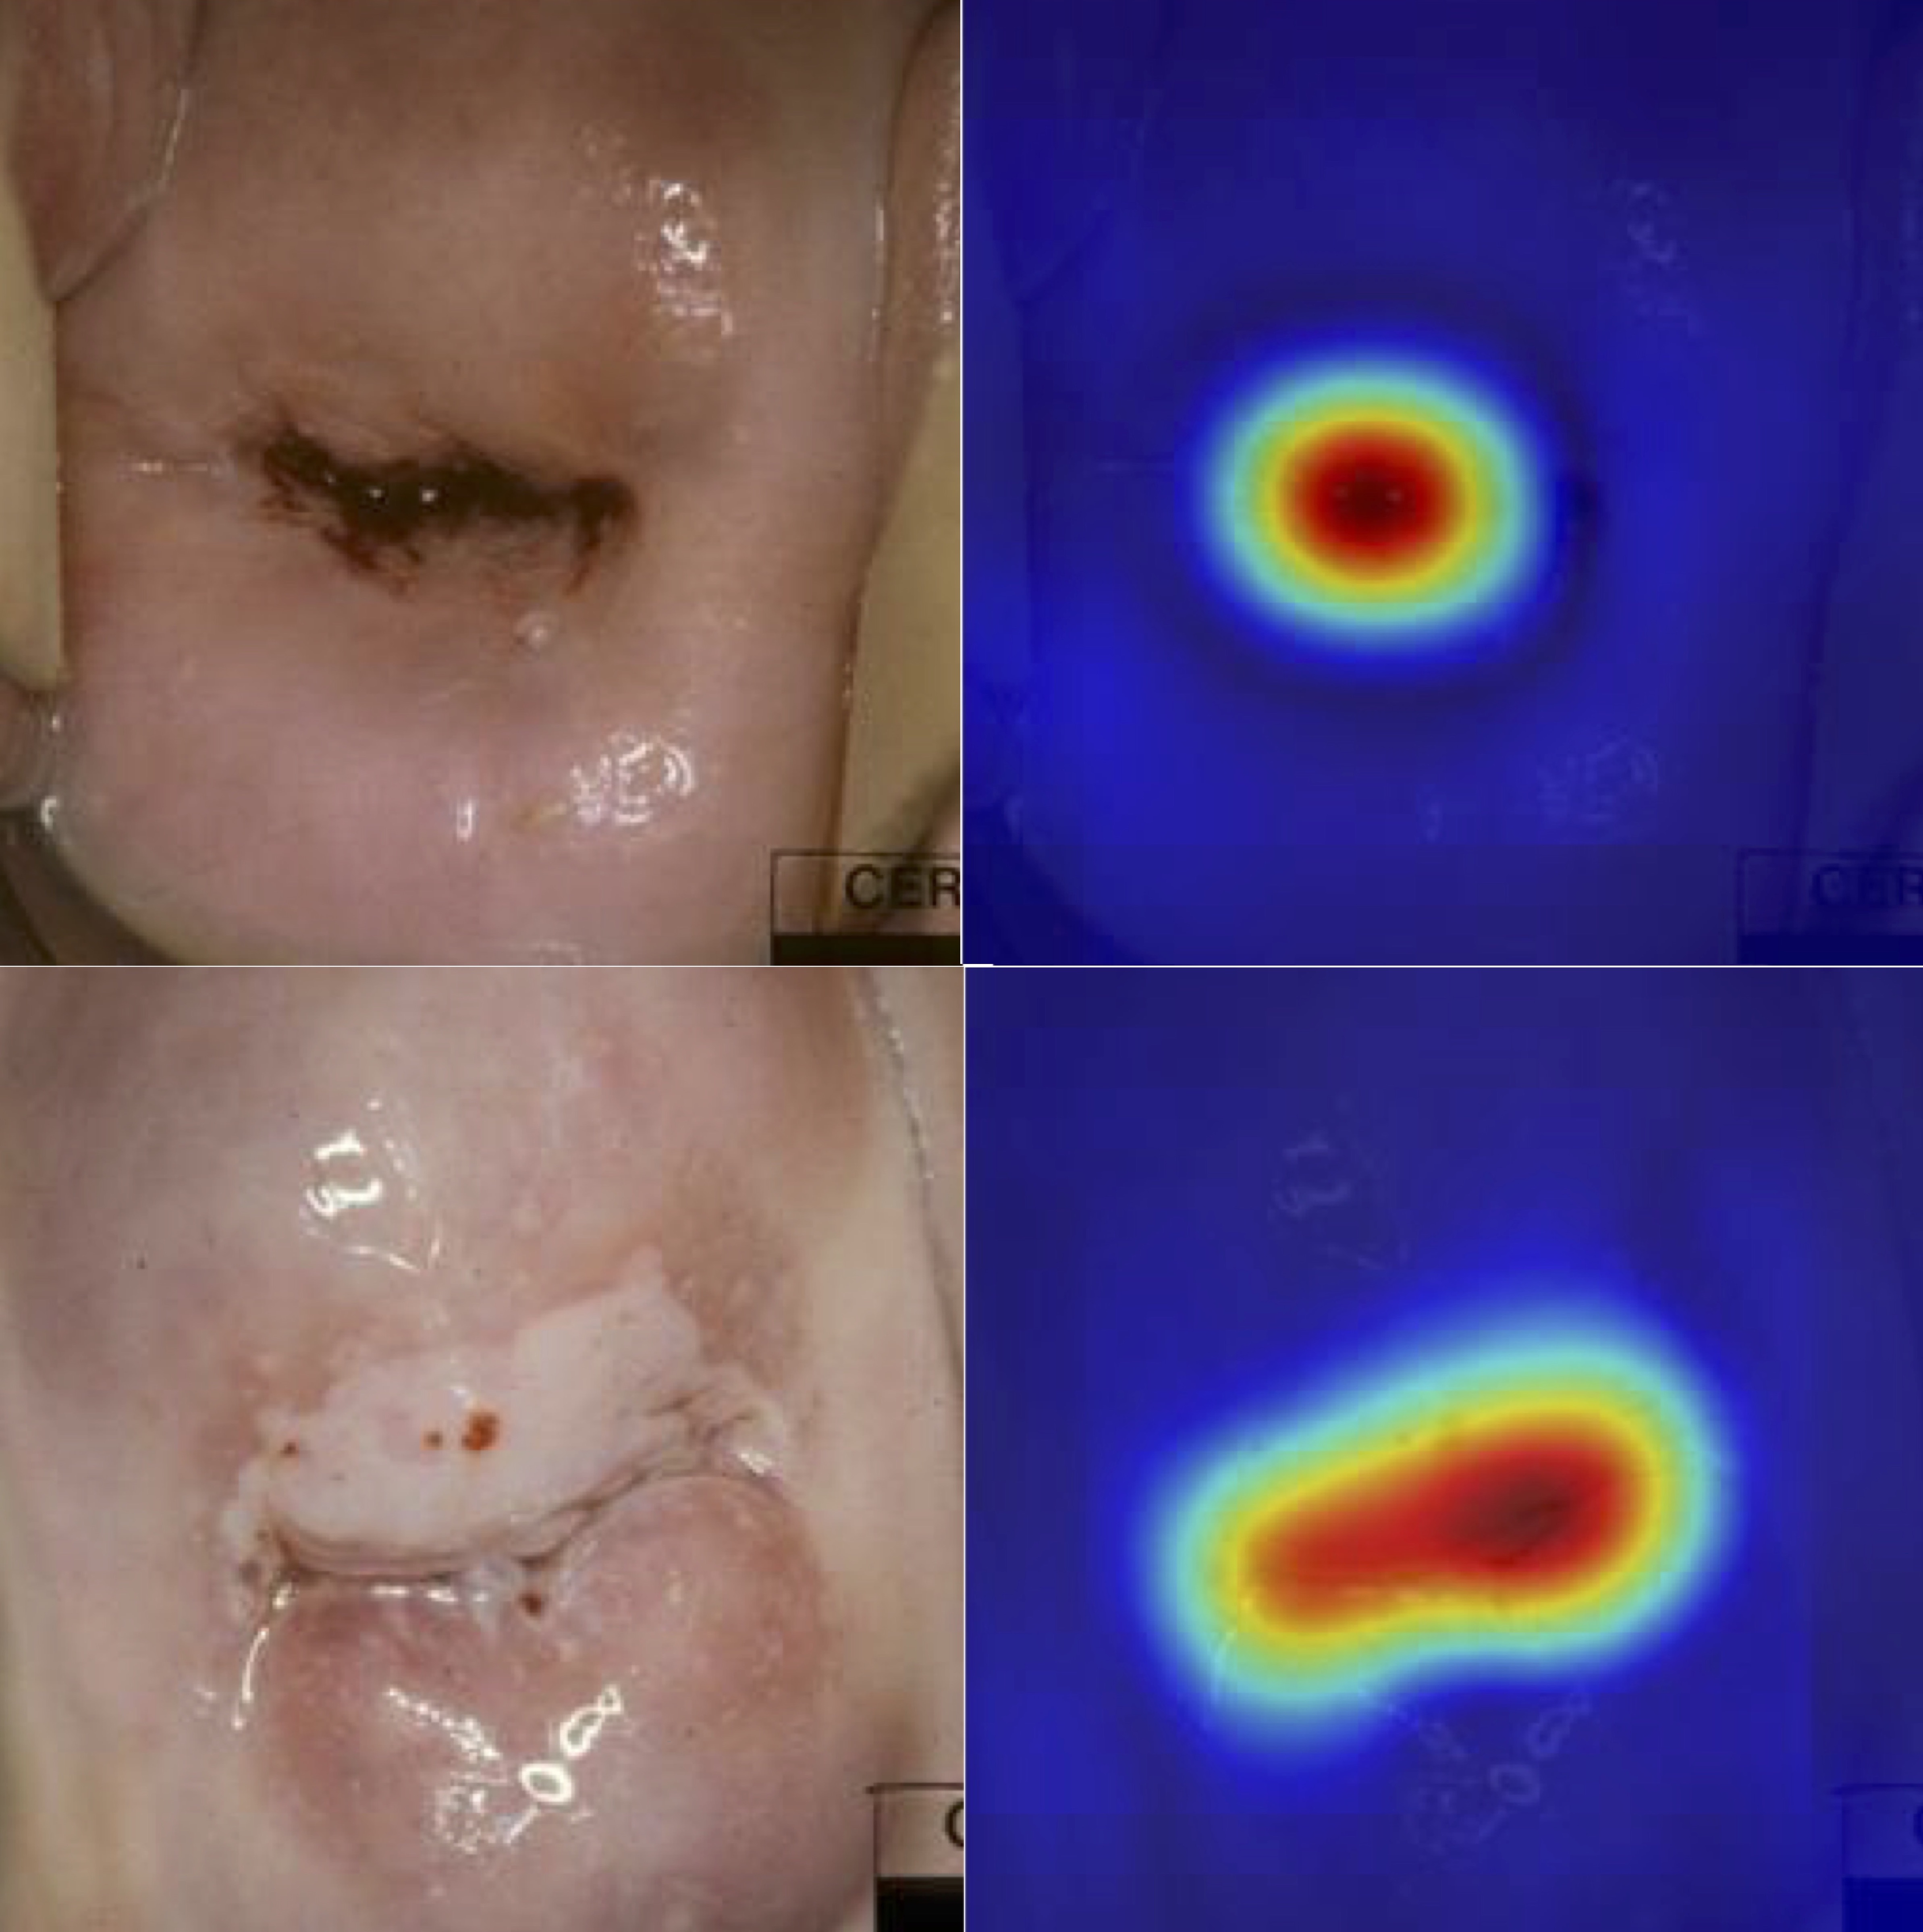 În stânga, imaginile arată leziuni precanceroase recunoscute corect de algoritmul computerizat. În dreapta, sunt reprezentate hărțile de „căldură” corespunzătoare, generate automat